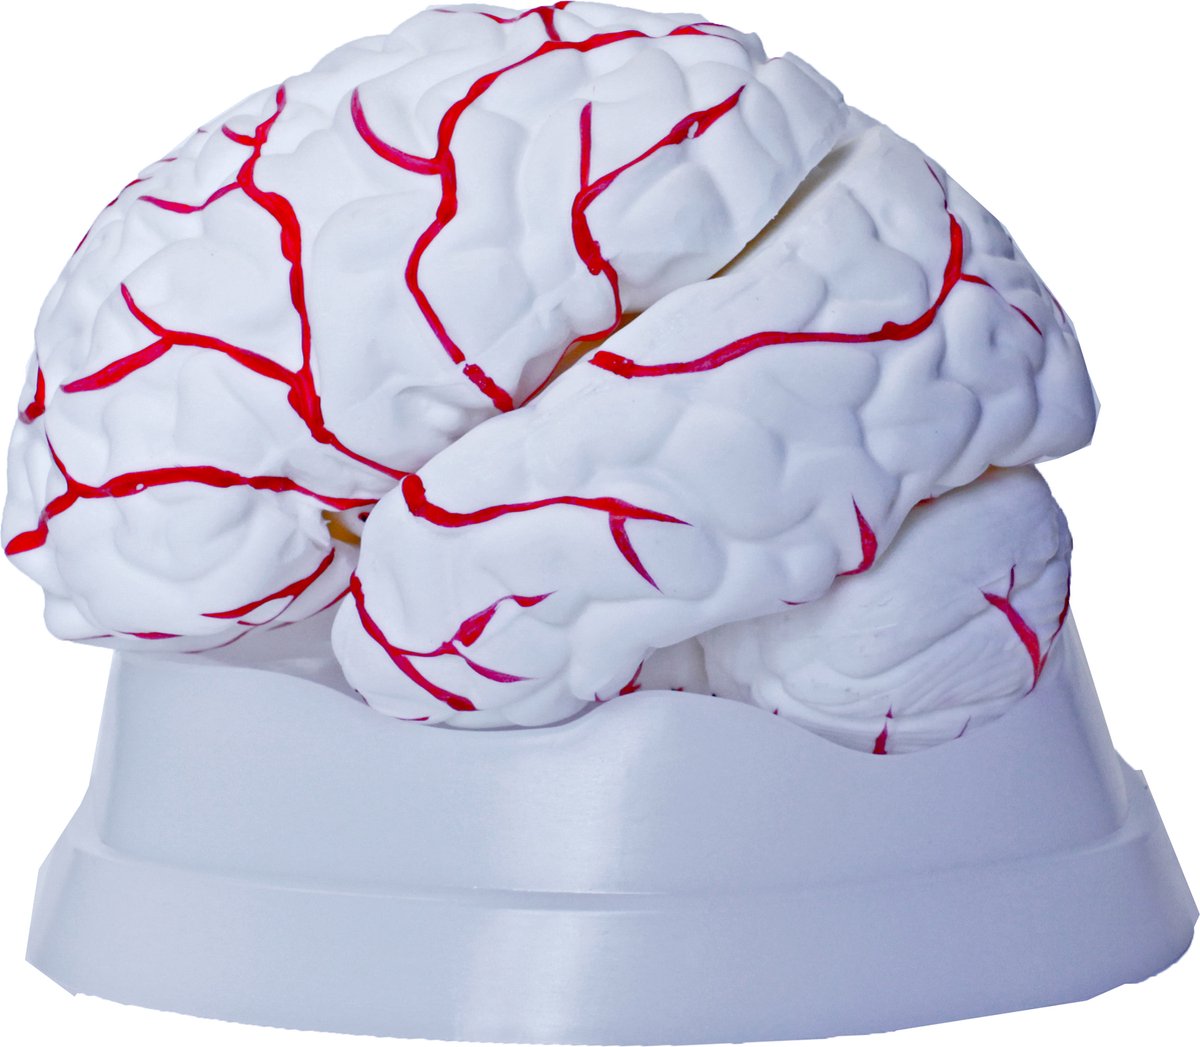 Hersenmodel, ware grootte, 8-delig, met bloedvaten, Anatomie model van de Hersenen